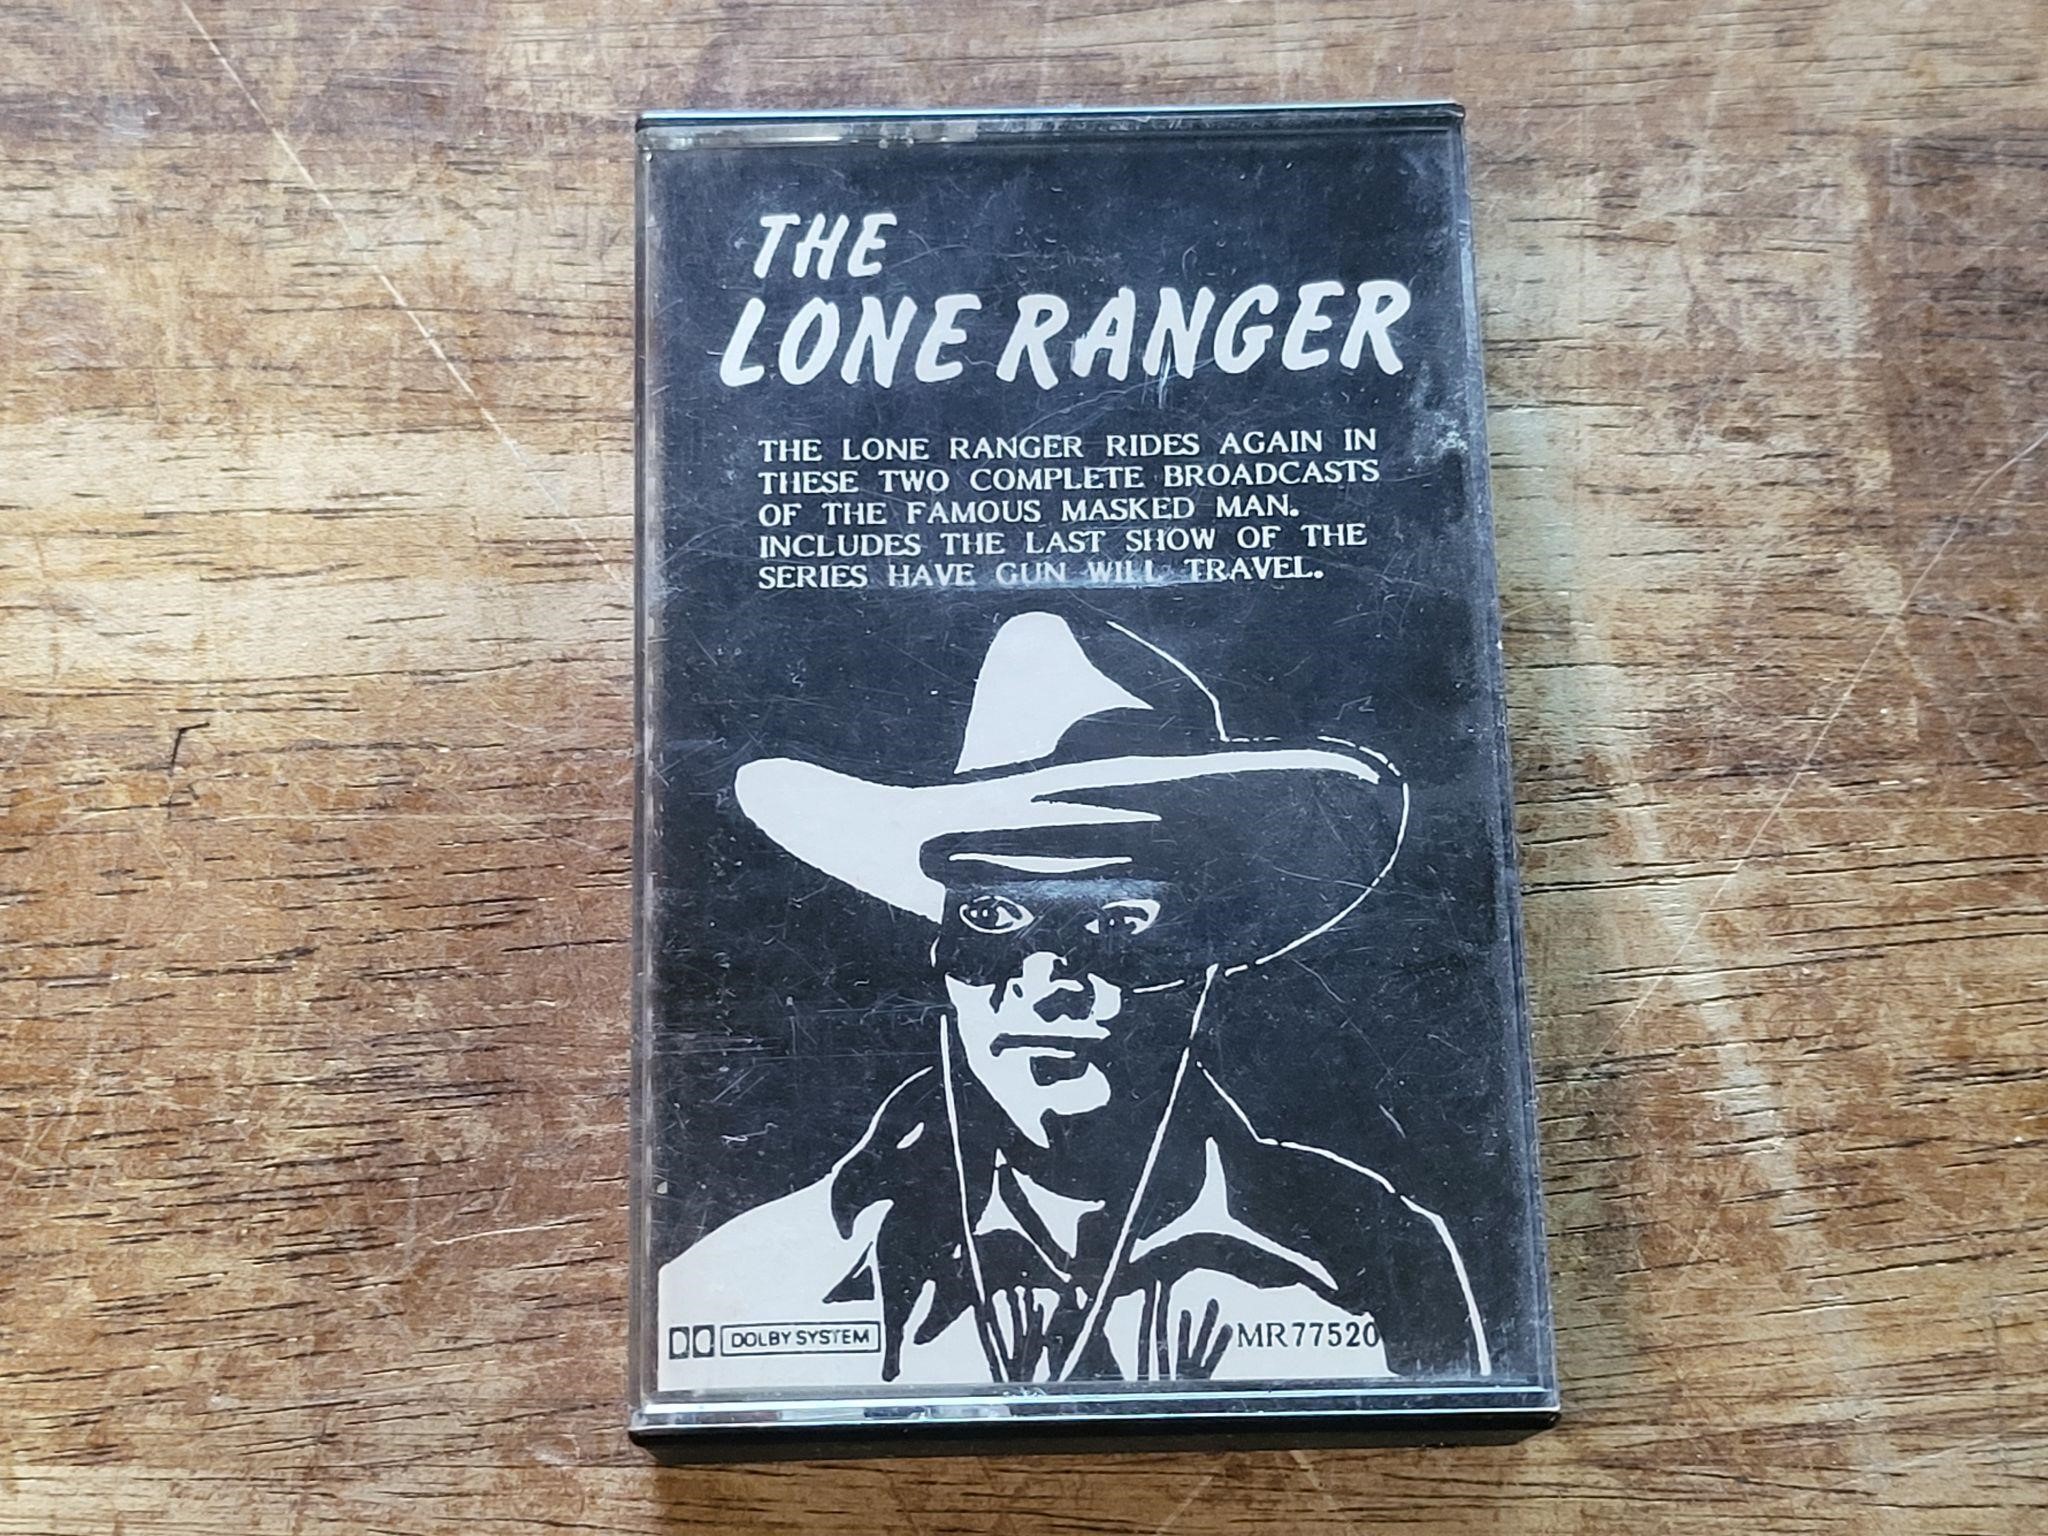 Lone Ranger tape